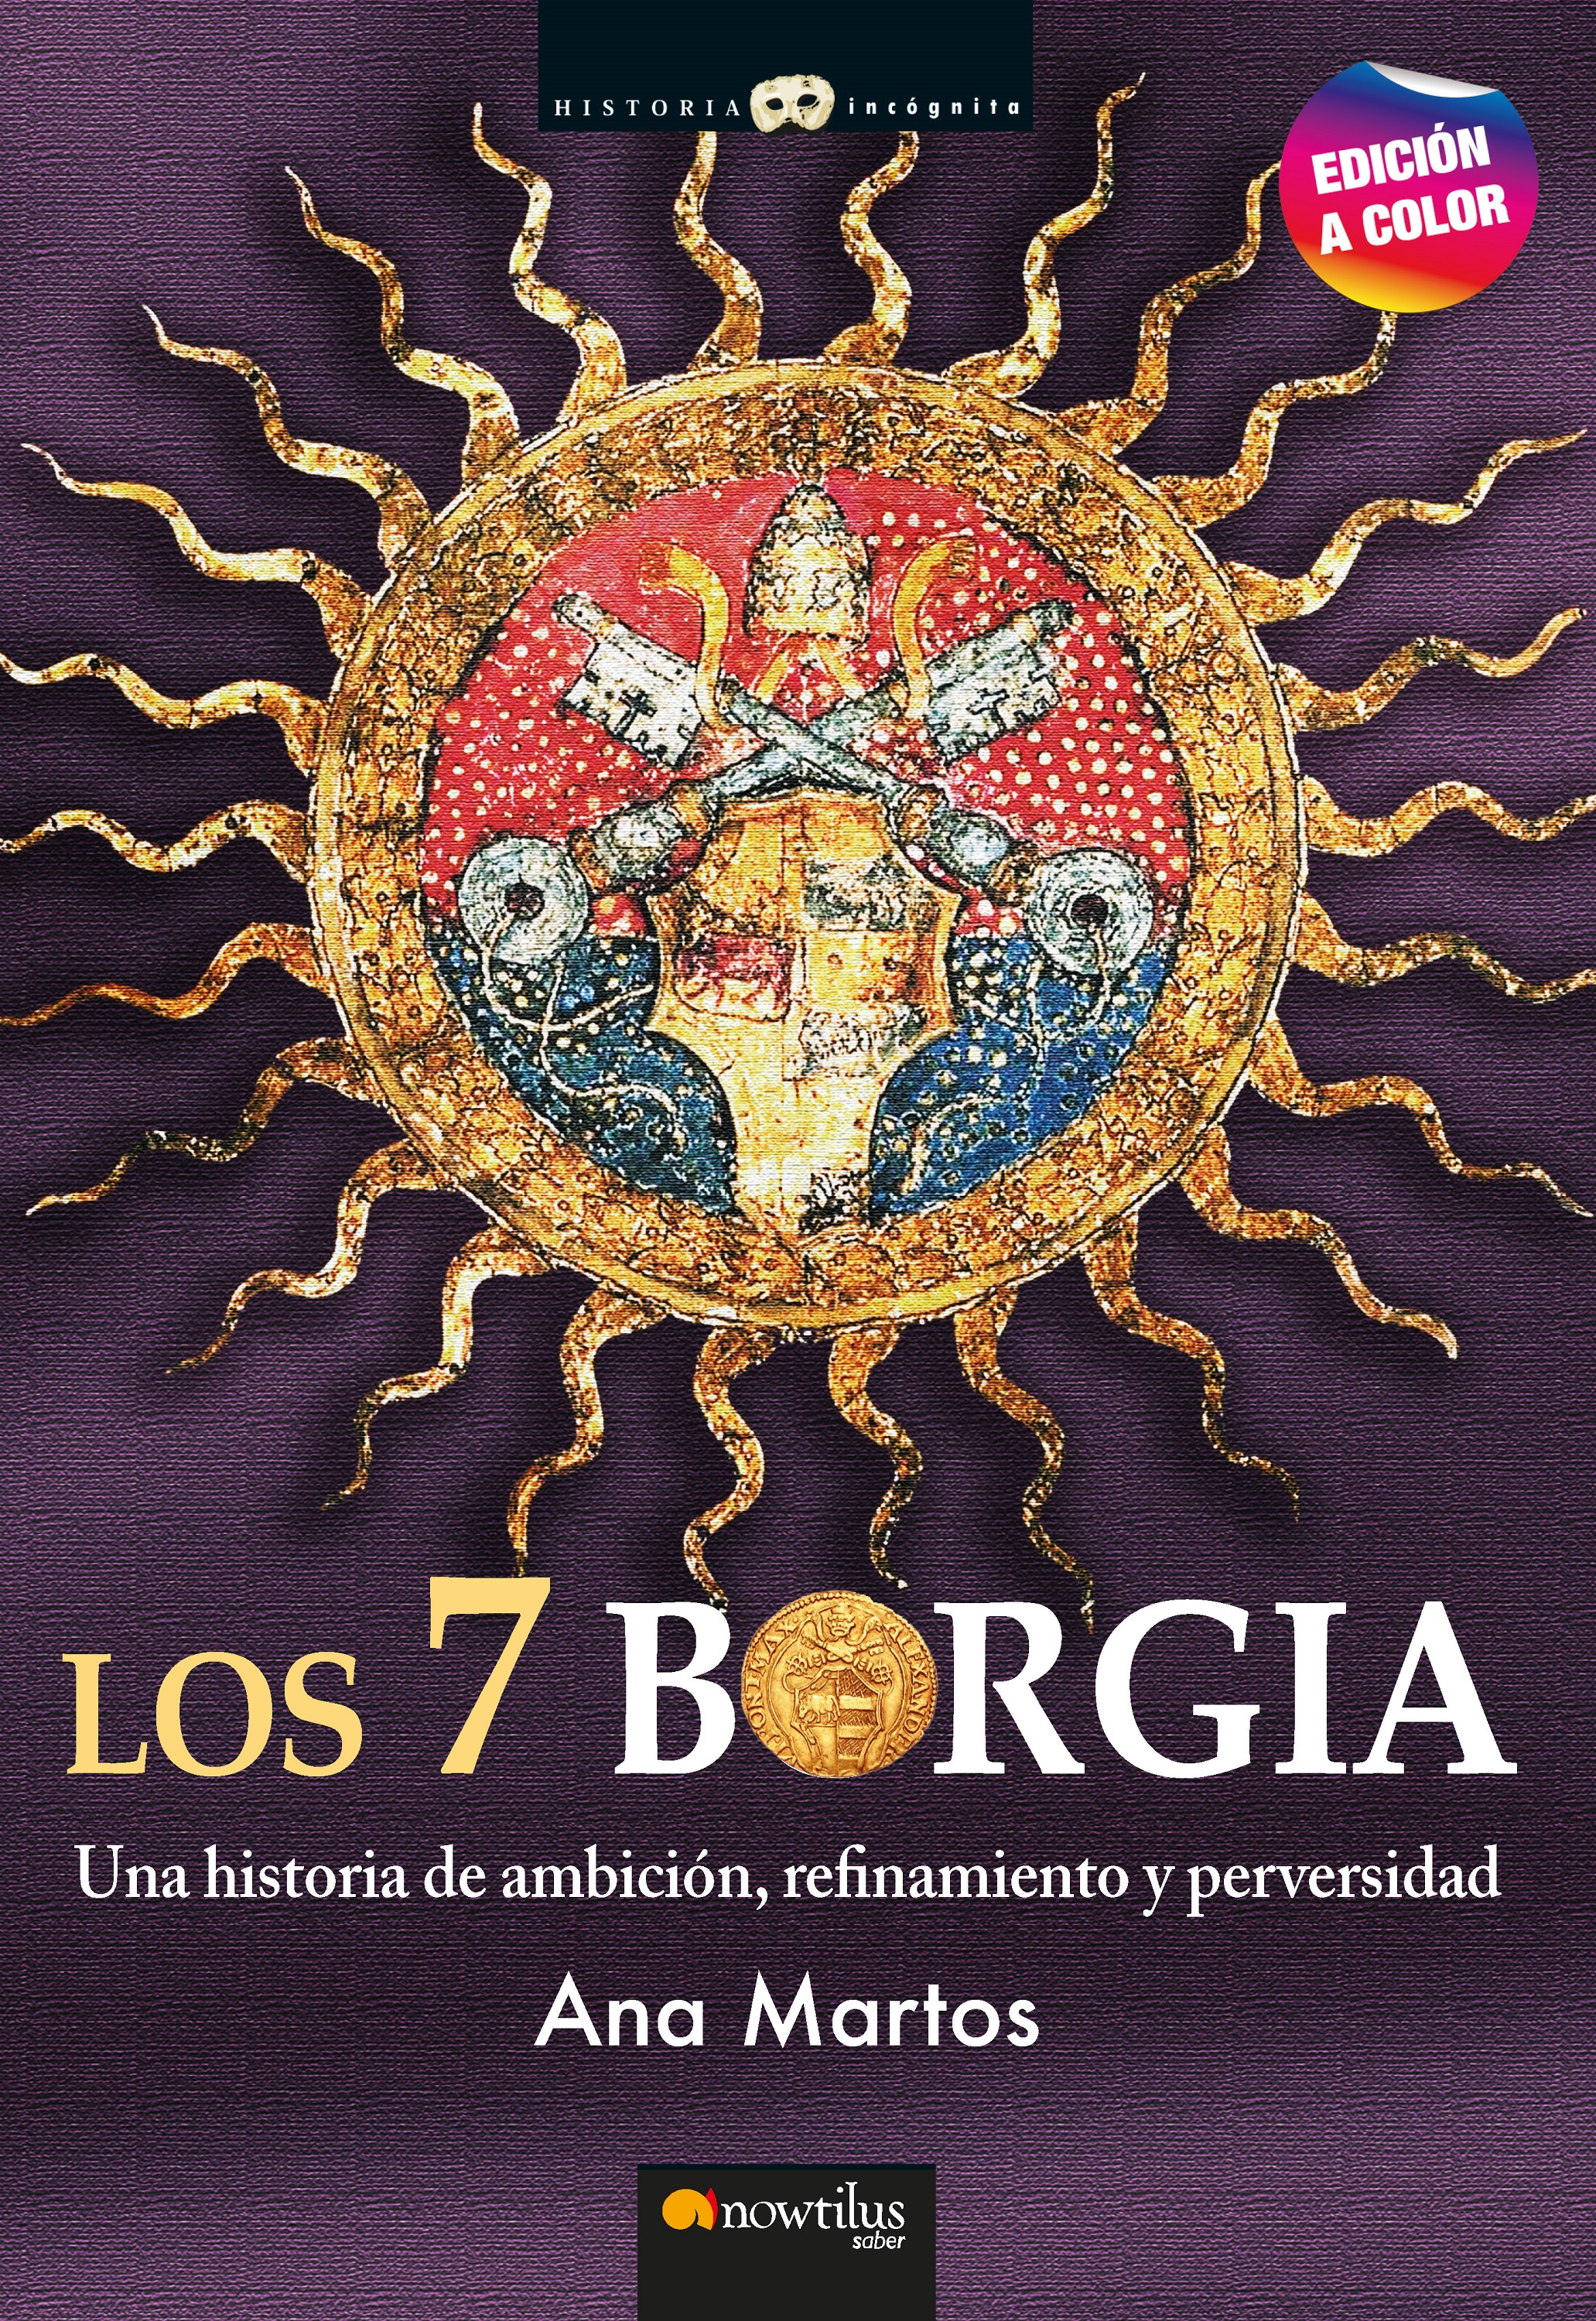 Los 7 Borgia. Nueva edición a color   «Una historia de ambición, refinamiento y perversidad» (9788413053080)